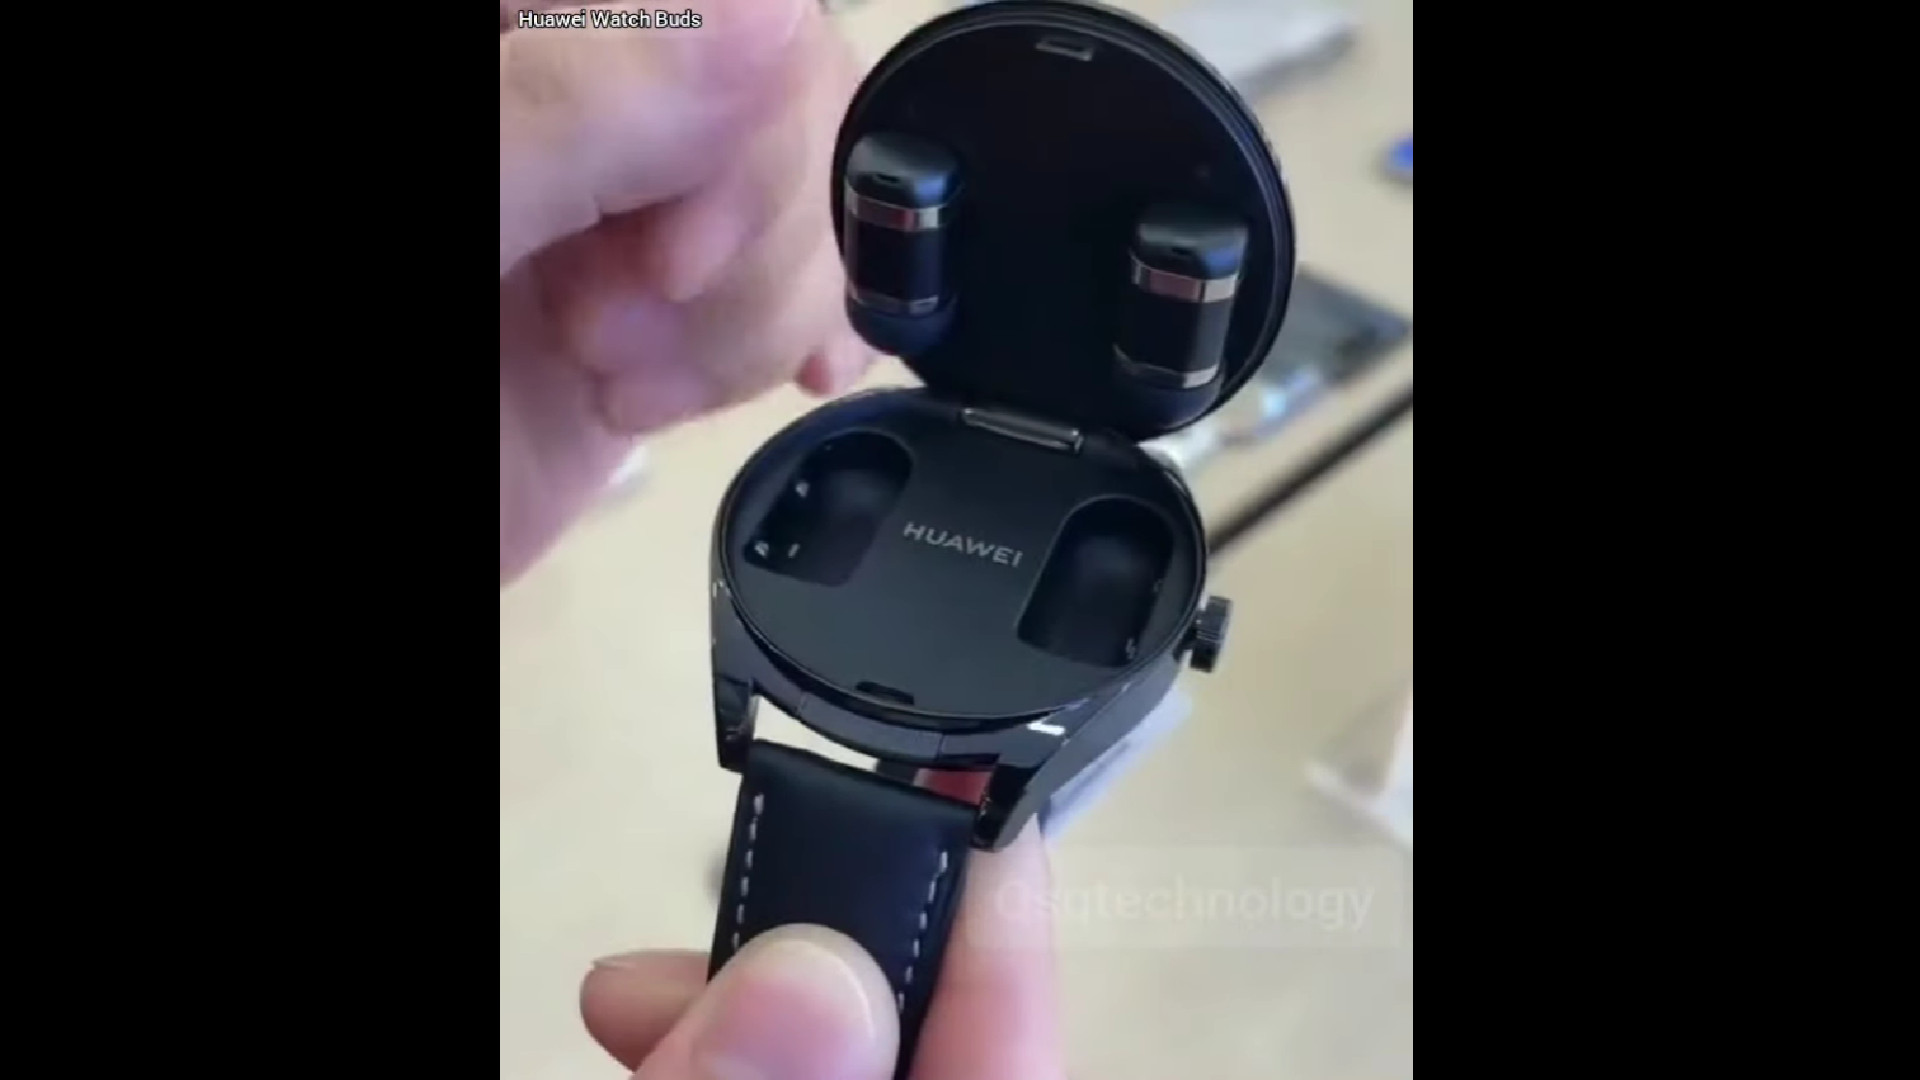 The Huawei Watch Buds.